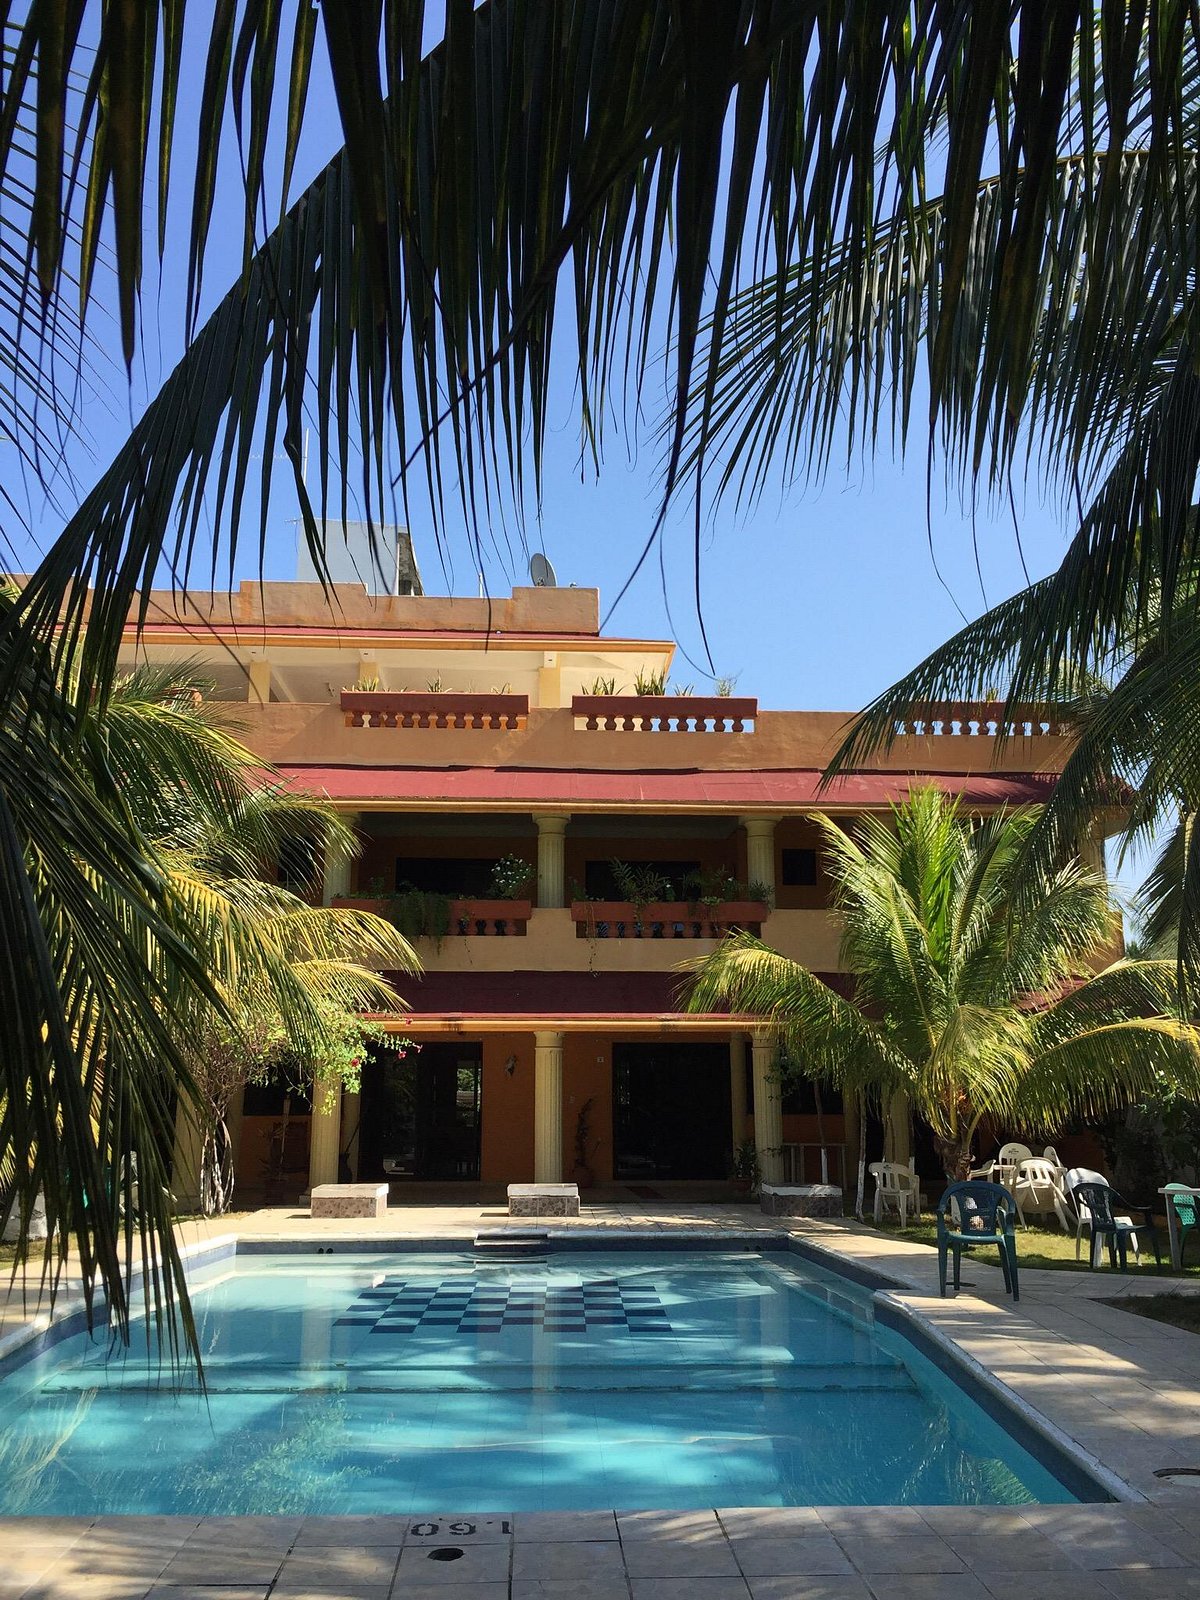 Playa Linda Hotel Tapachula Chiapas Hotel Tripadvisor 